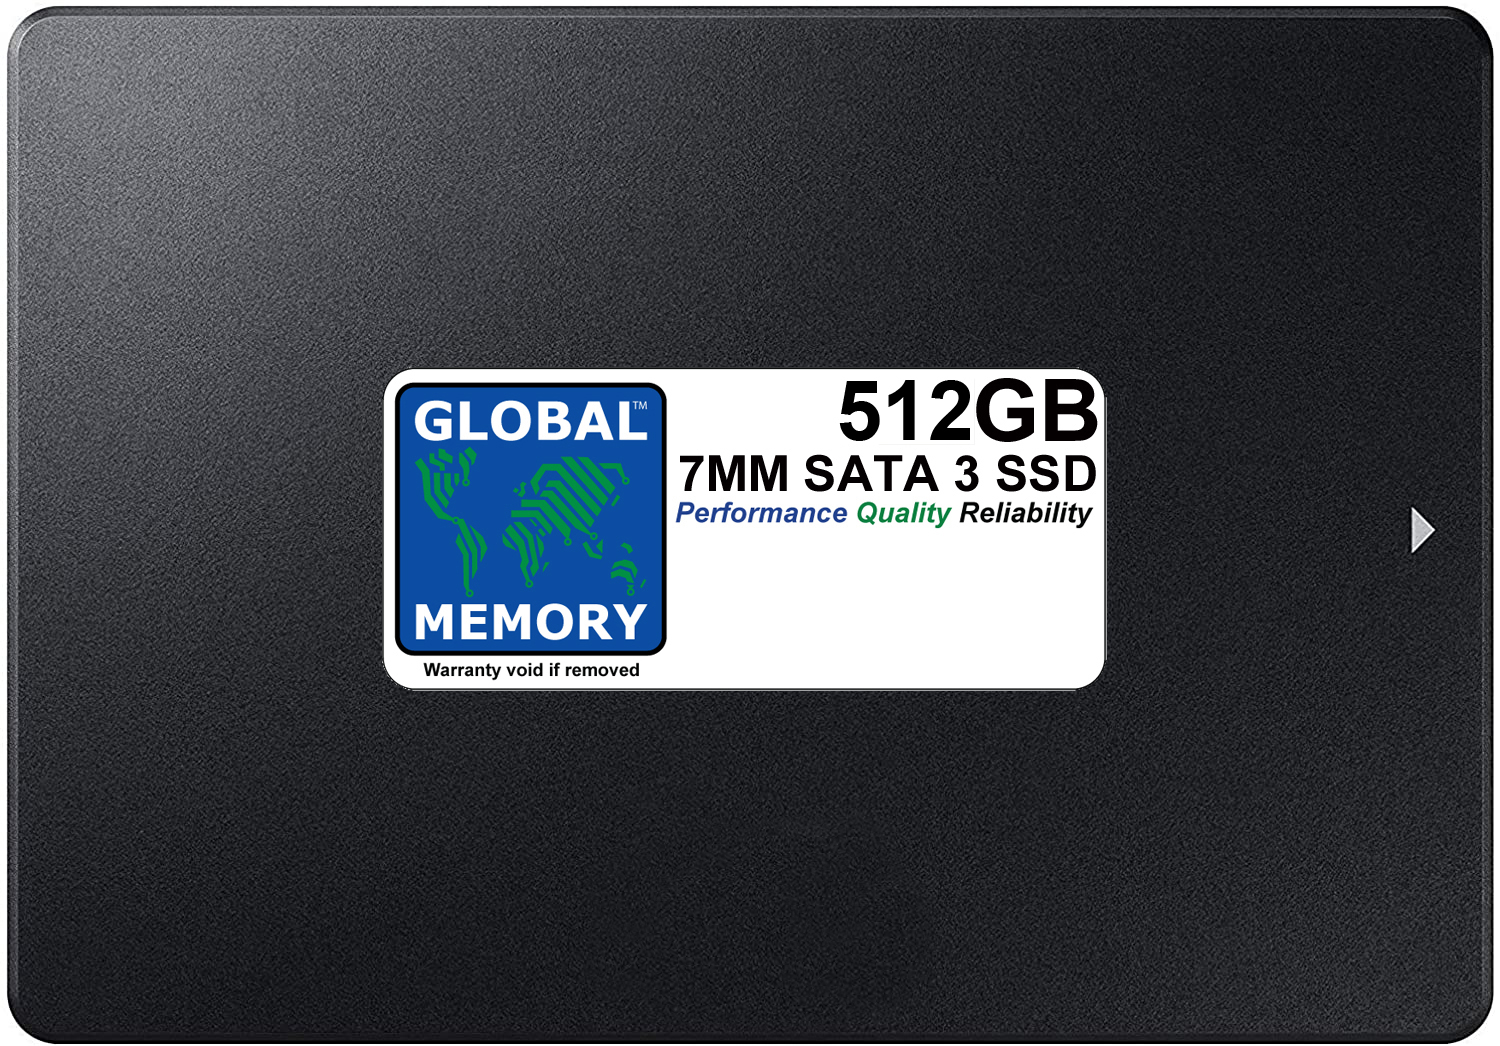 512GB 7mm 2.5" SATA 3 SSD FOR MACBOOK PRO NON RETINA (2011 - 2012) - Click Image to Close